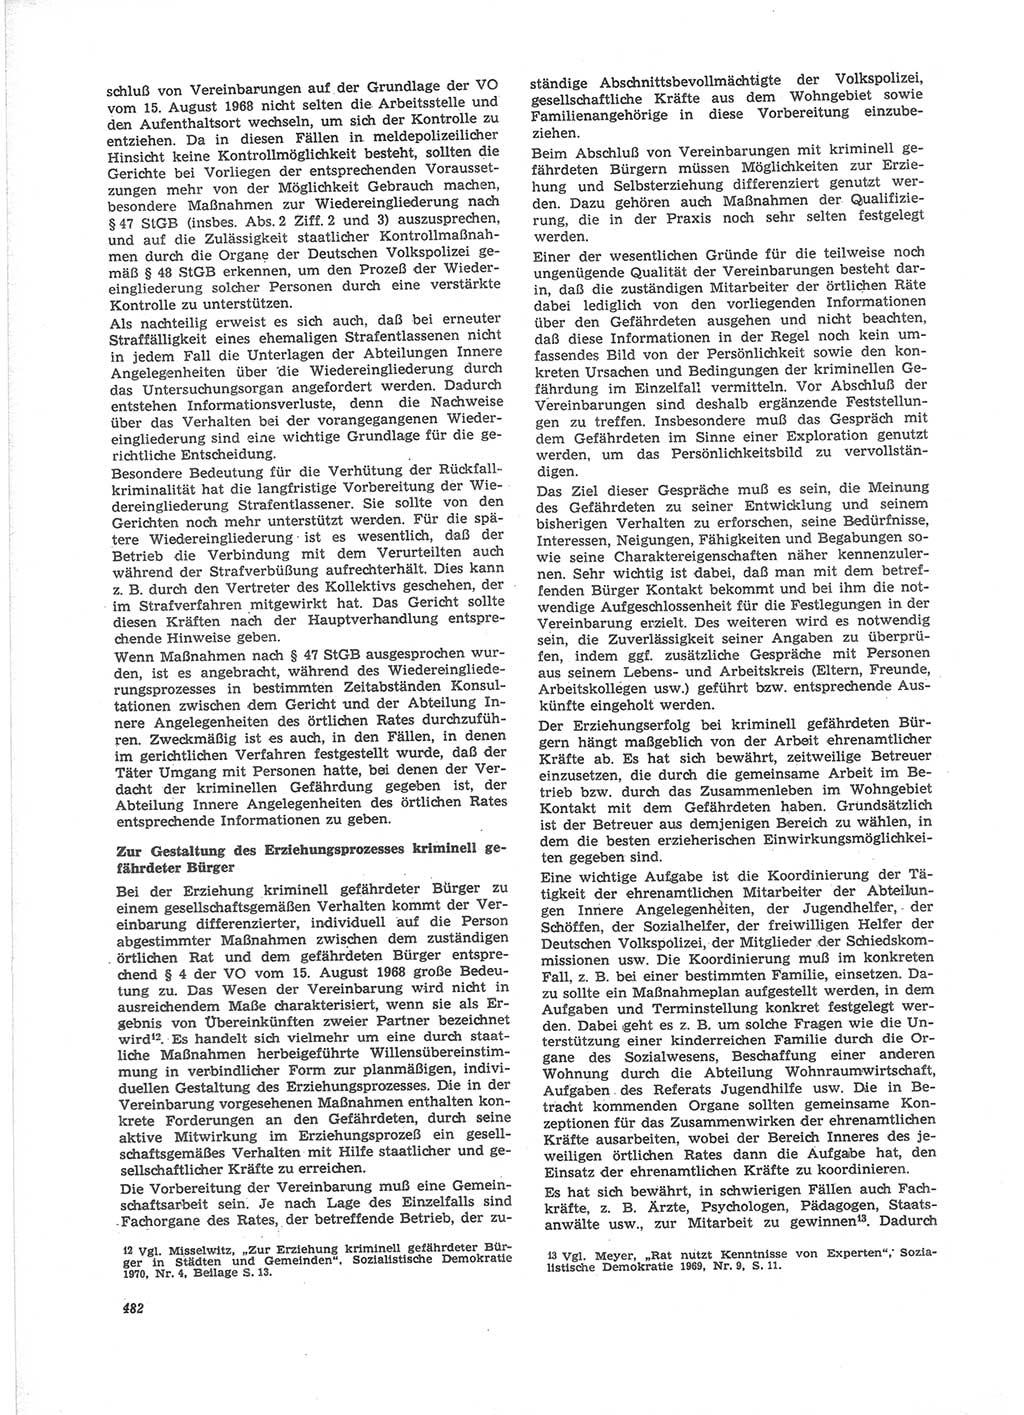 Neue Justiz (NJ), Zeitschrift für Recht und Rechtswissenschaft [Deutsche Demokratische Republik (DDR)], 24. Jahrgang 1970, Seite 482 (NJ DDR 1970, S. 482)